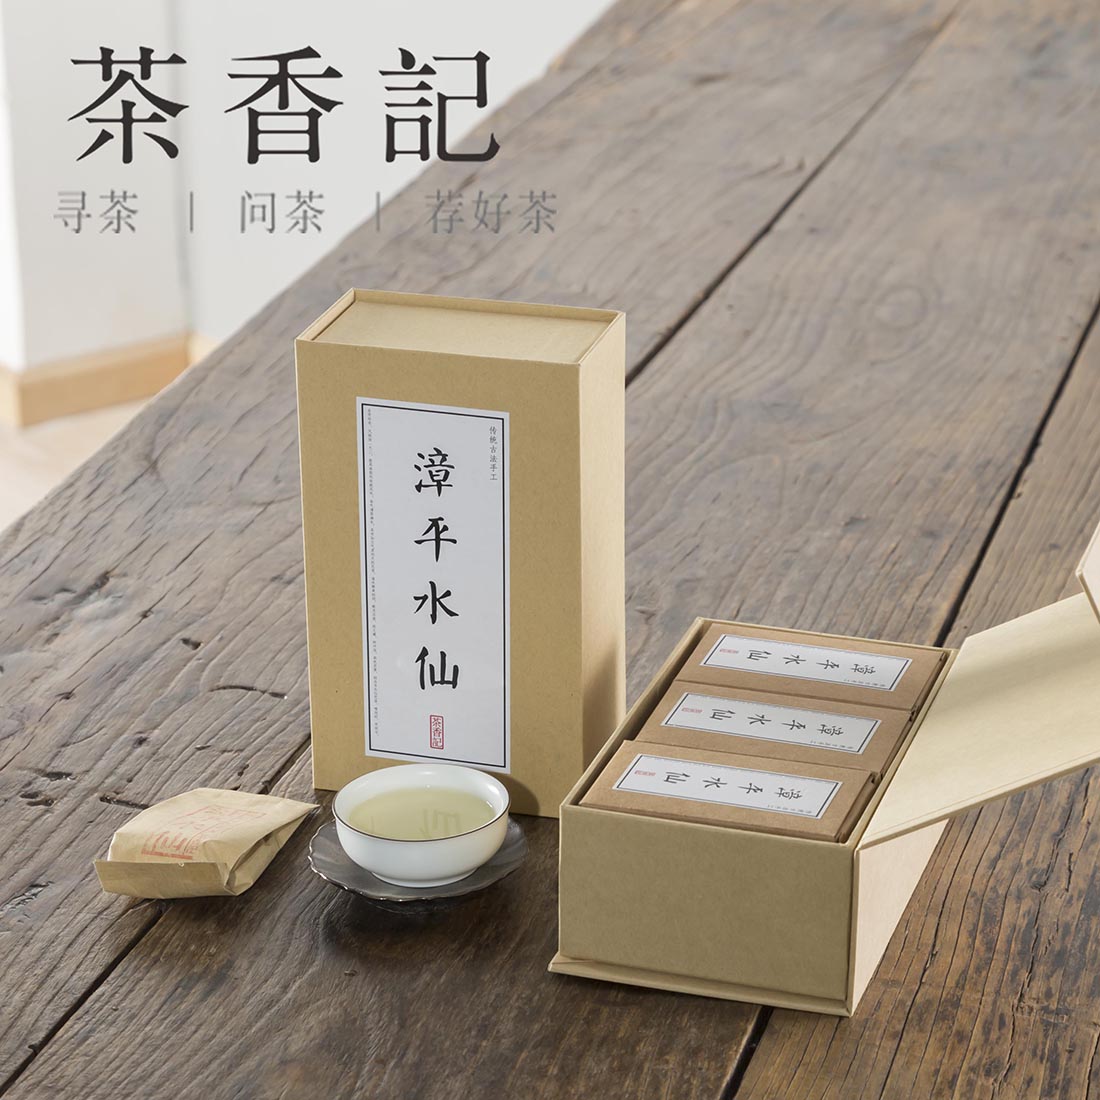 茶香记 2015年春茶传统工艺古法制作手工碳焙漳平水仙茶饼